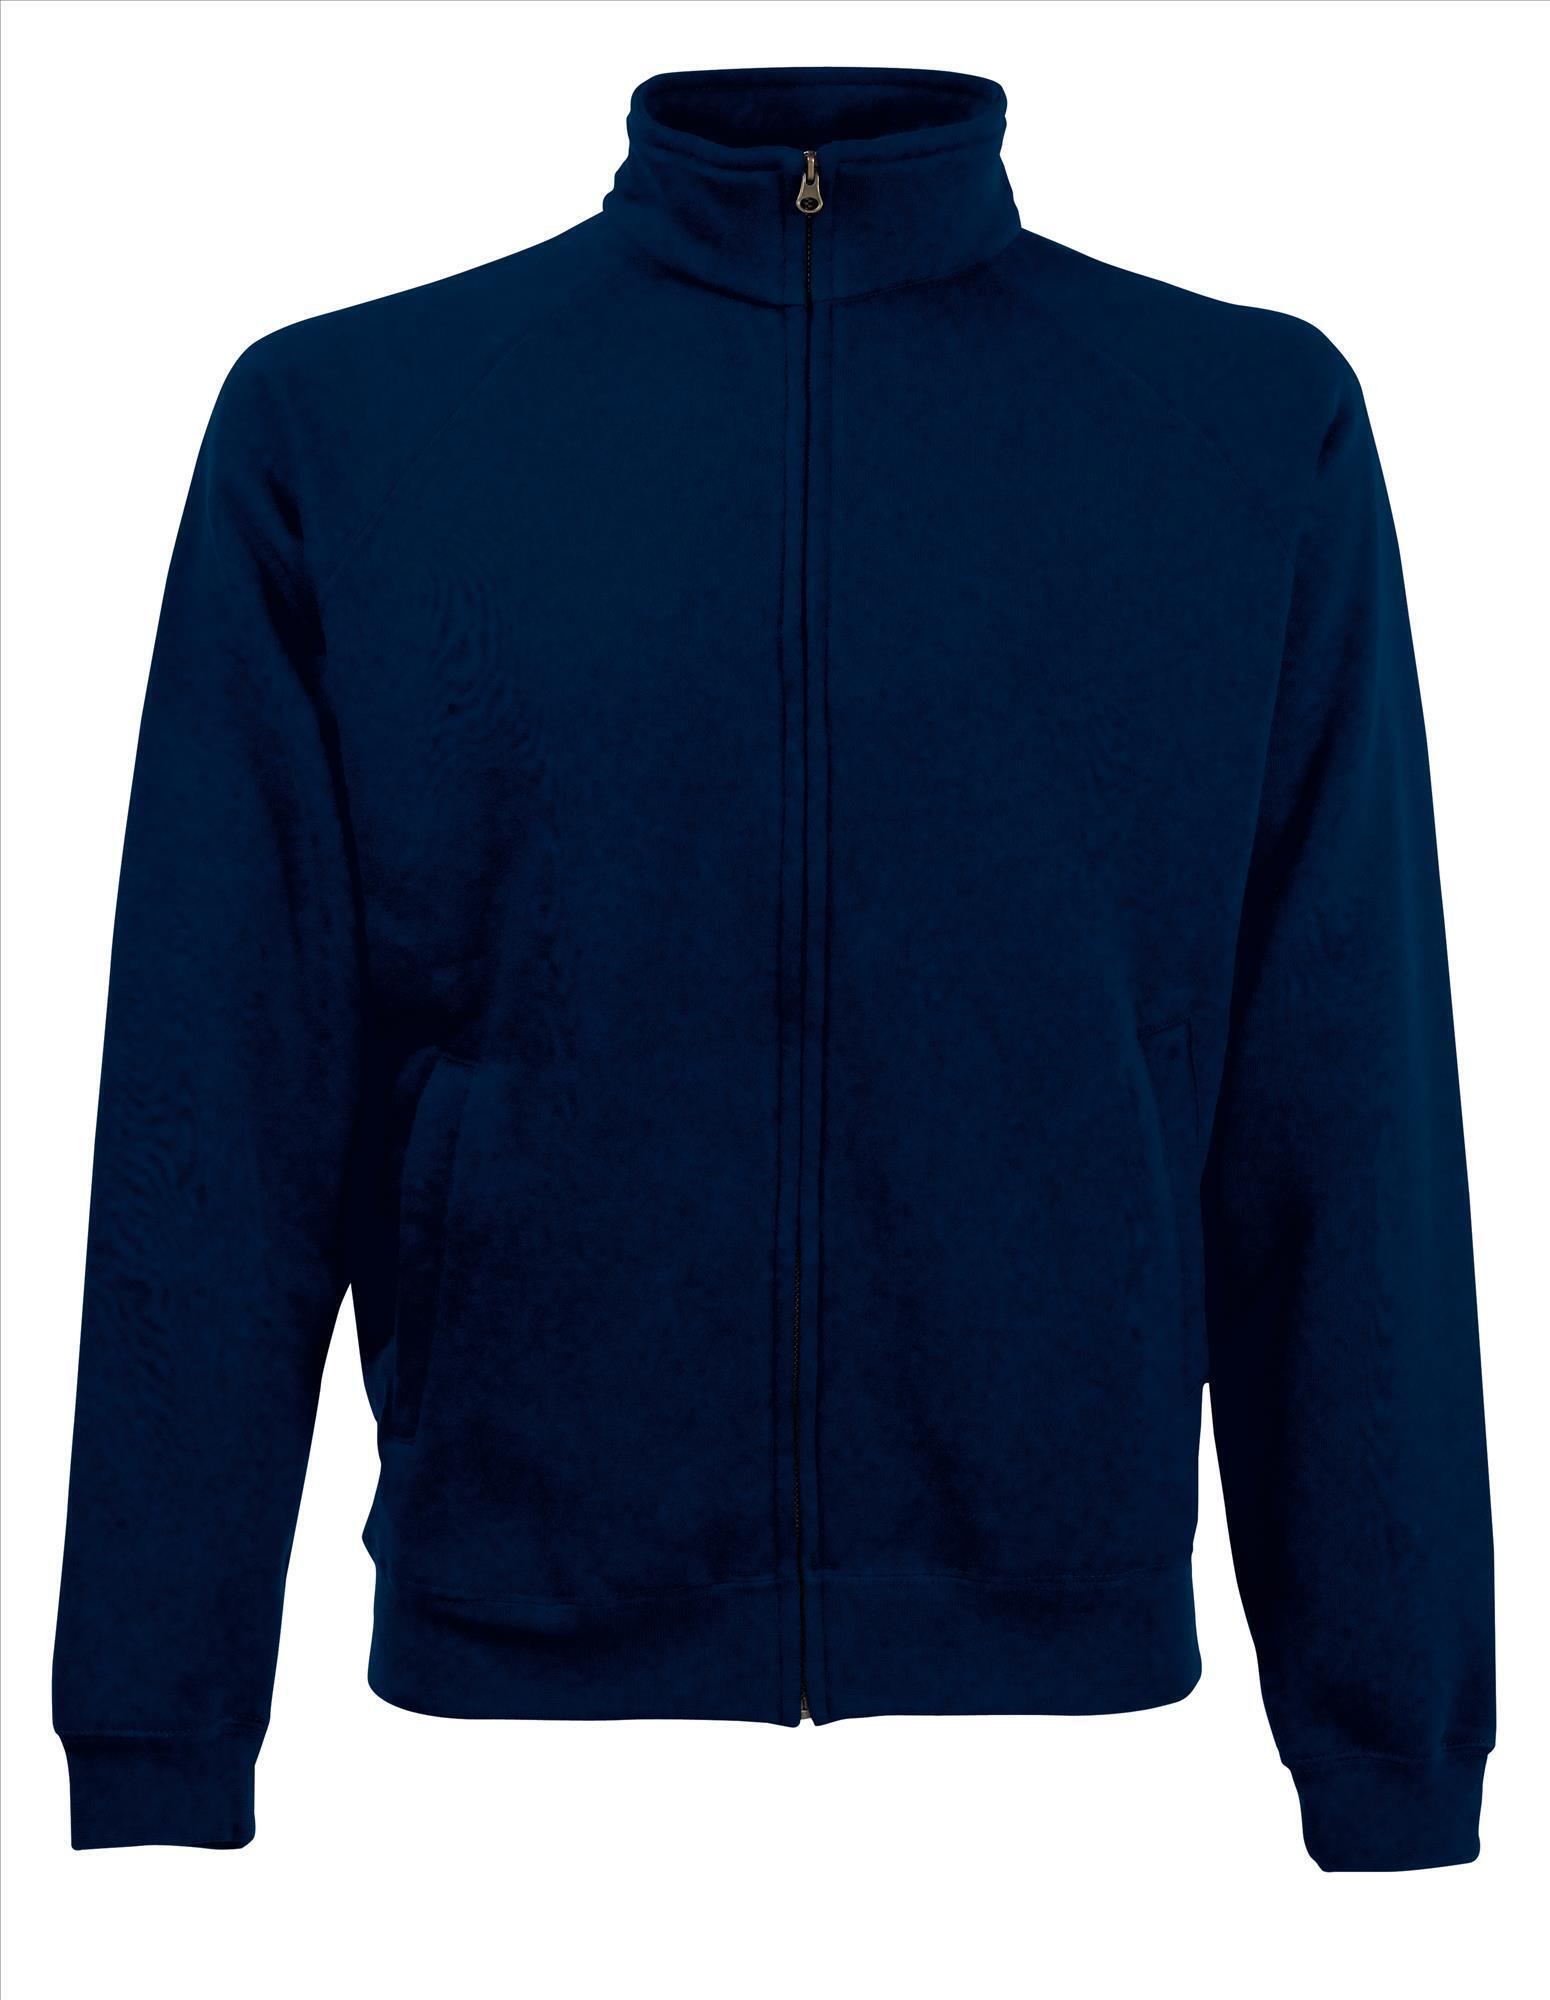 Heren sweater diep Marine blauw personaliseren met eigen bedrijfslogo foto tekst